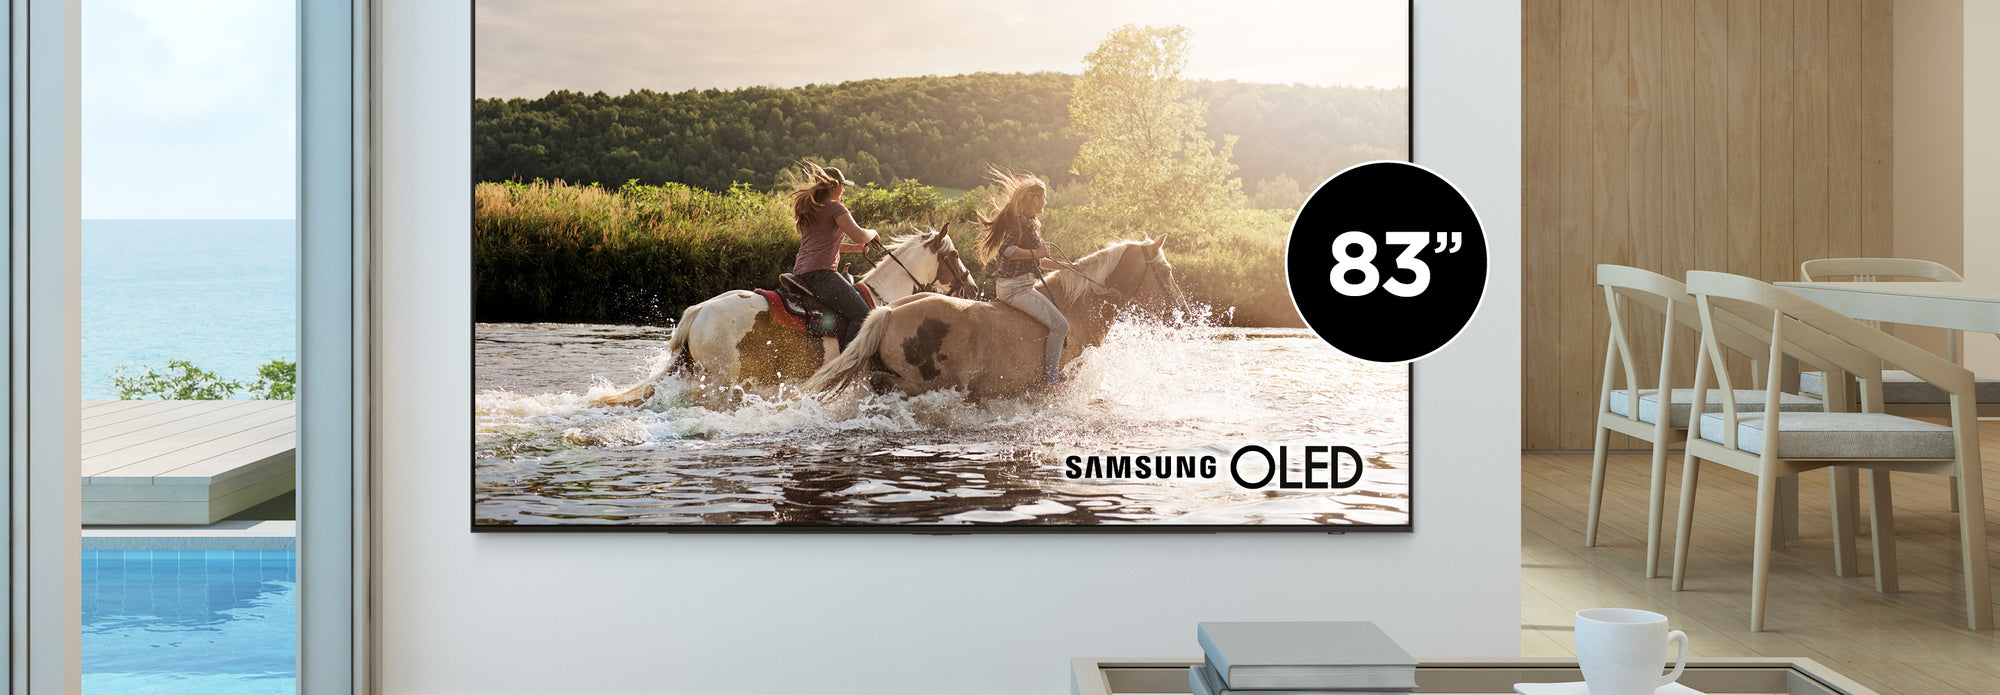 Nouveauté Samsung 83" OLED | SONXPLUS Lac-St-Jean